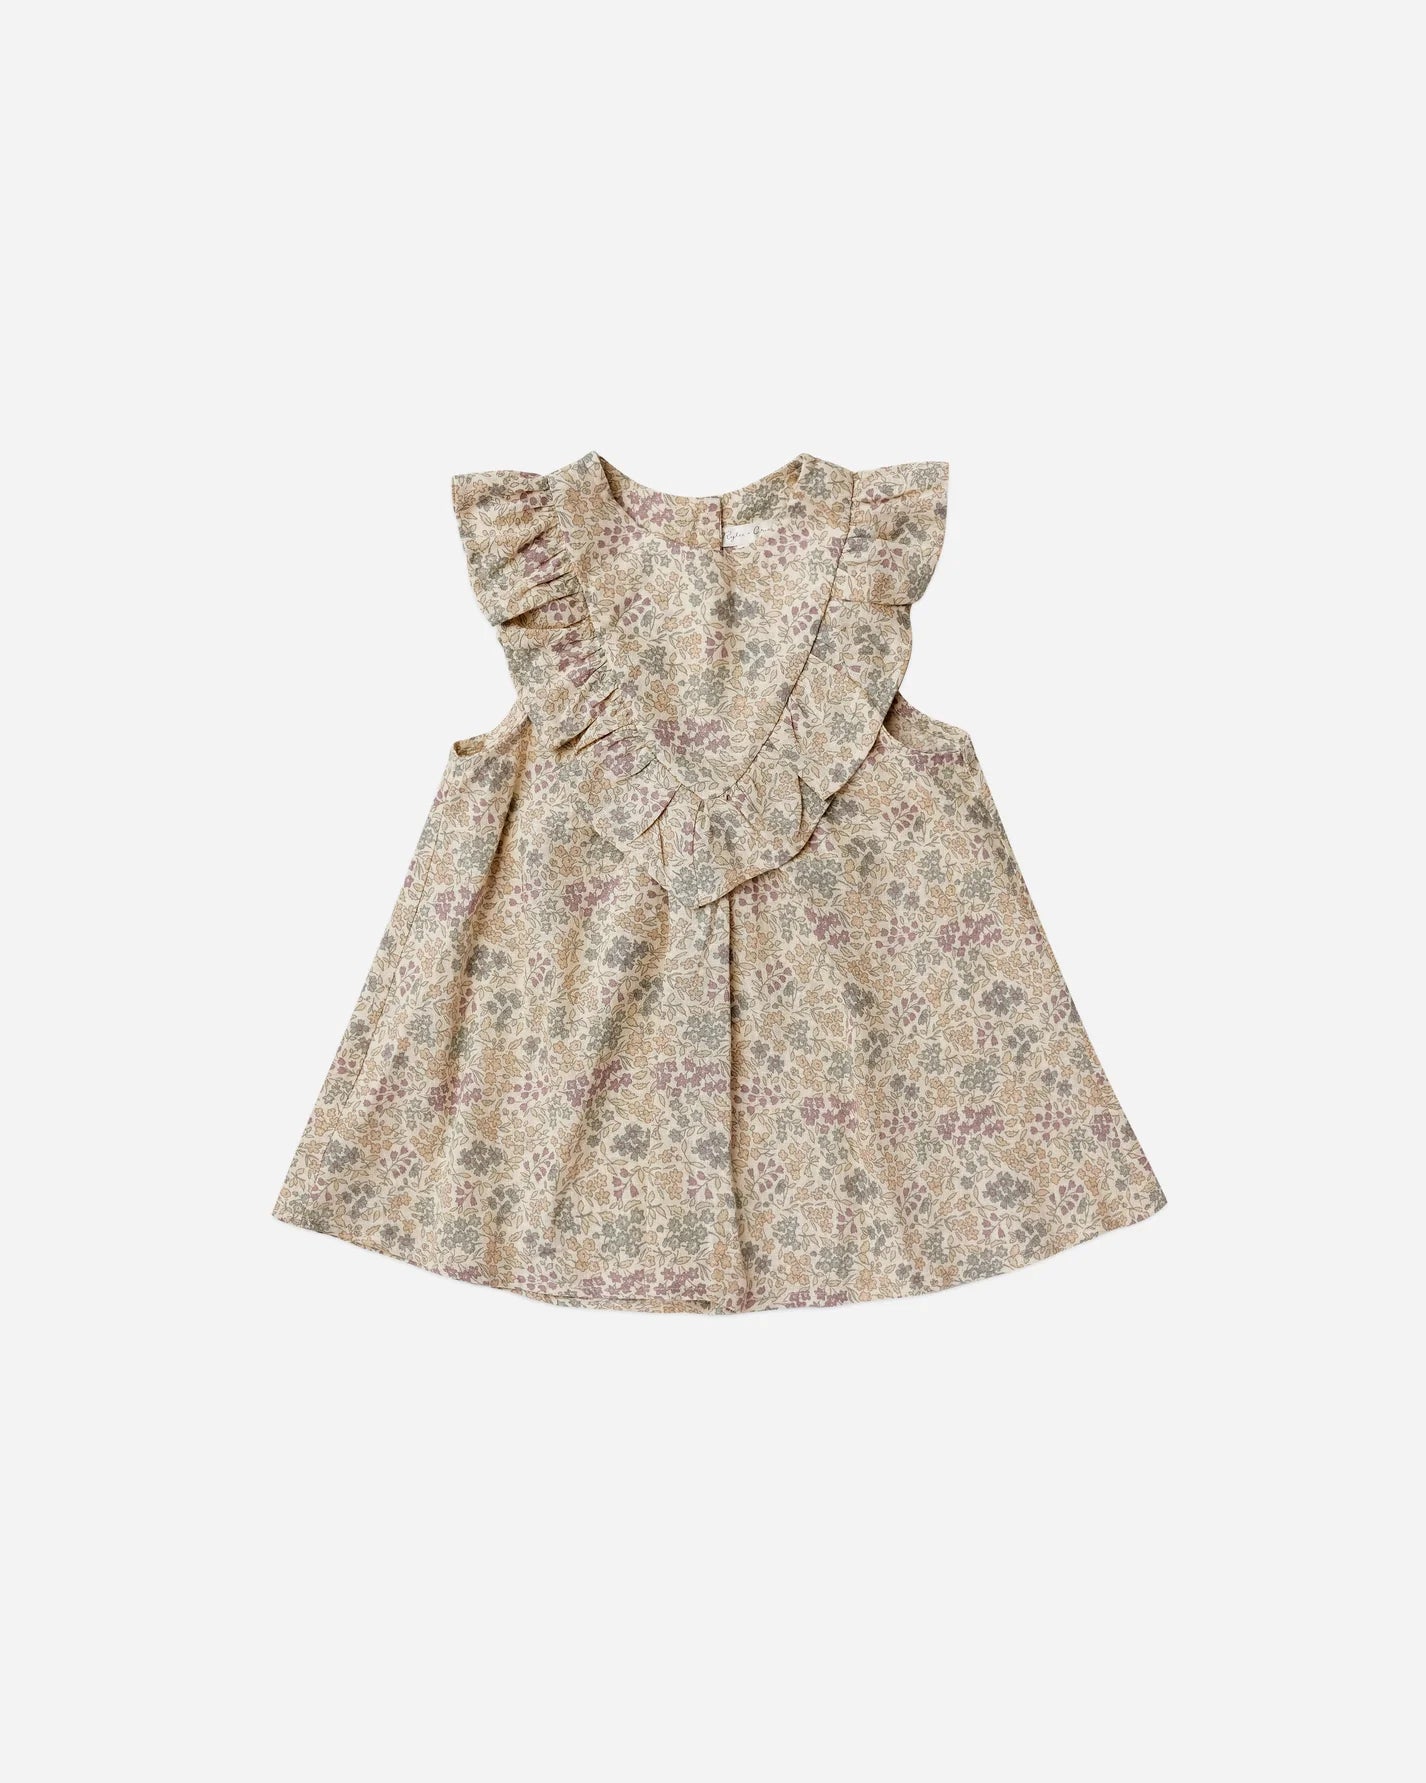 Maisie Dress in Garden  - Doodlebug's Children's Boutique